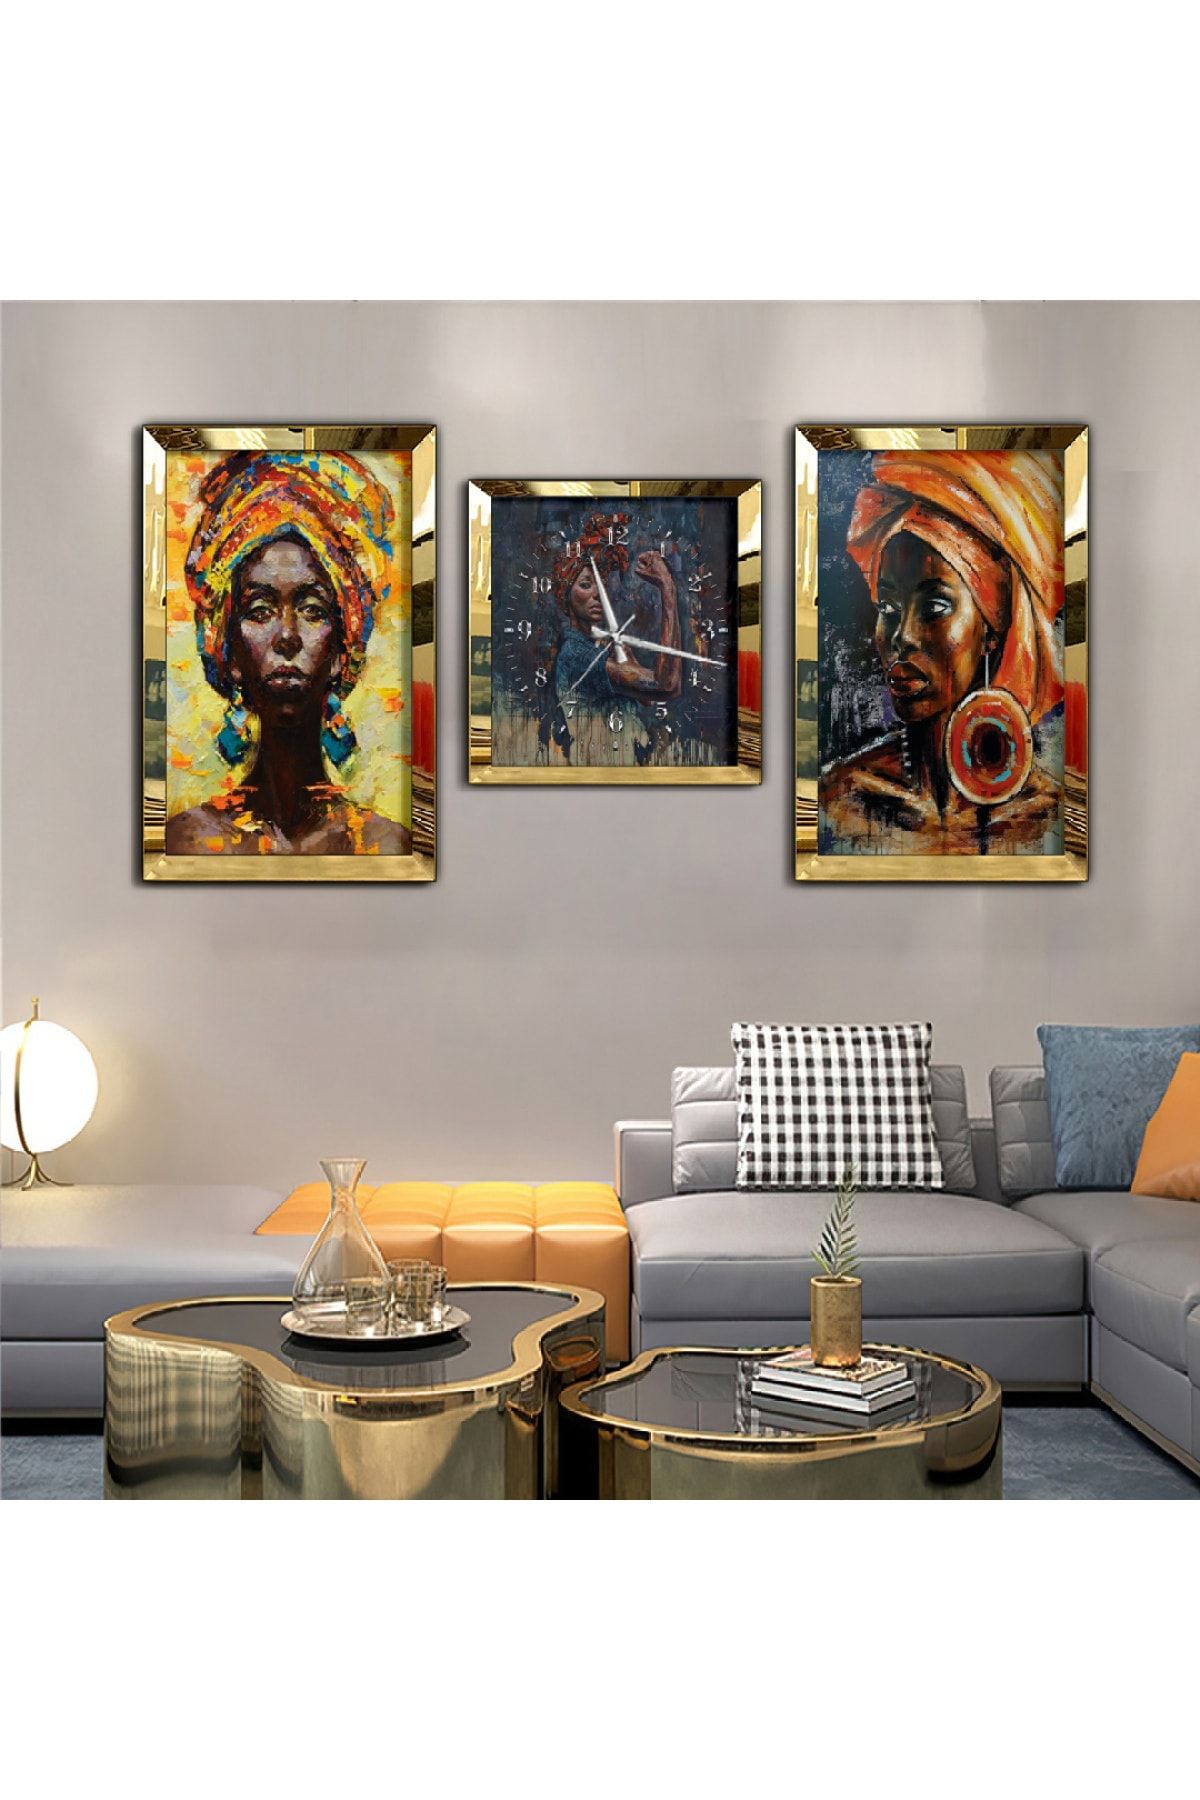 Zevahir Mobilya Dekorasyon Afrikalı Kadın Aynalı Gold Pleksi Çerçeveli Mdf Tablo Ve Saat Seti